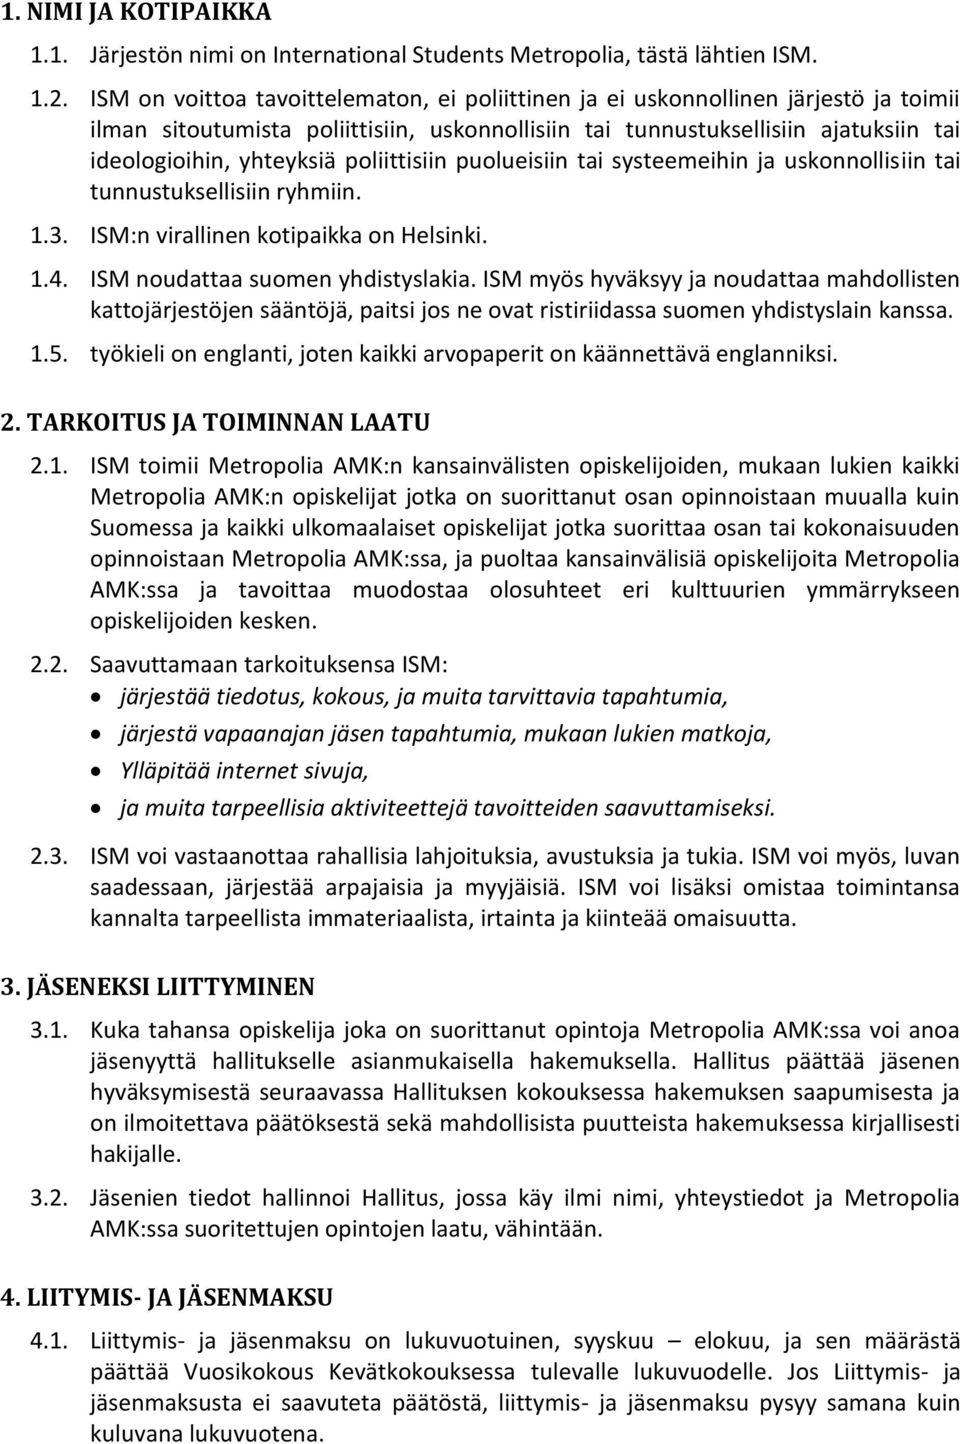 poliittisiin puolueisiin tai systeemeihin ja uskonnollisiin tai tunnustuksellisiin ryhmiin. 1.3. ISM:n virallinen kotipaikka on Helsinki. 1.4. ISM noudattaa suomen yhdistyslakia.